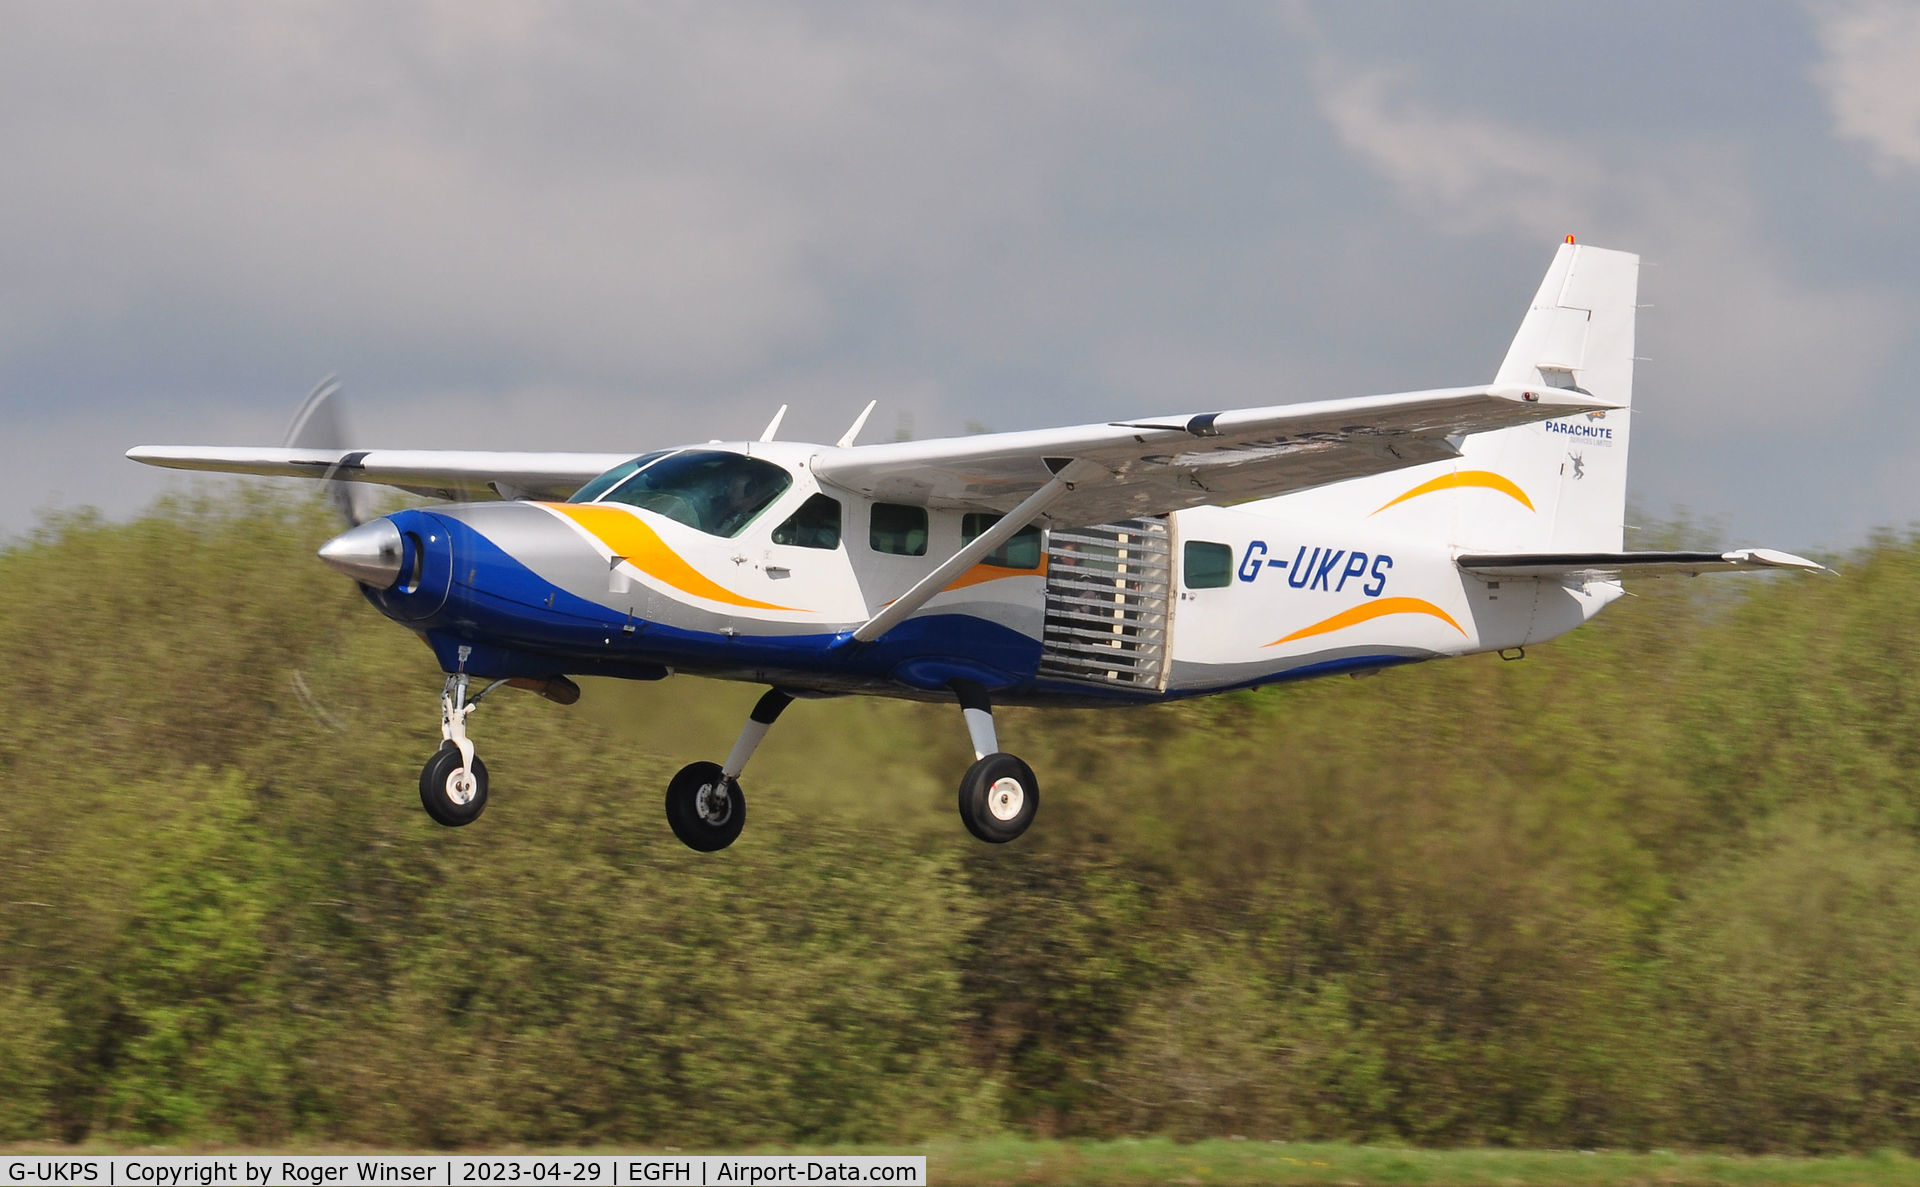 G-UKPS, 2007 Cessna 208 Caravan 1 C/N 20800423, Cessna Caravan operated by Skydive Swansea departing Runway 22 with a lift of skydivers.